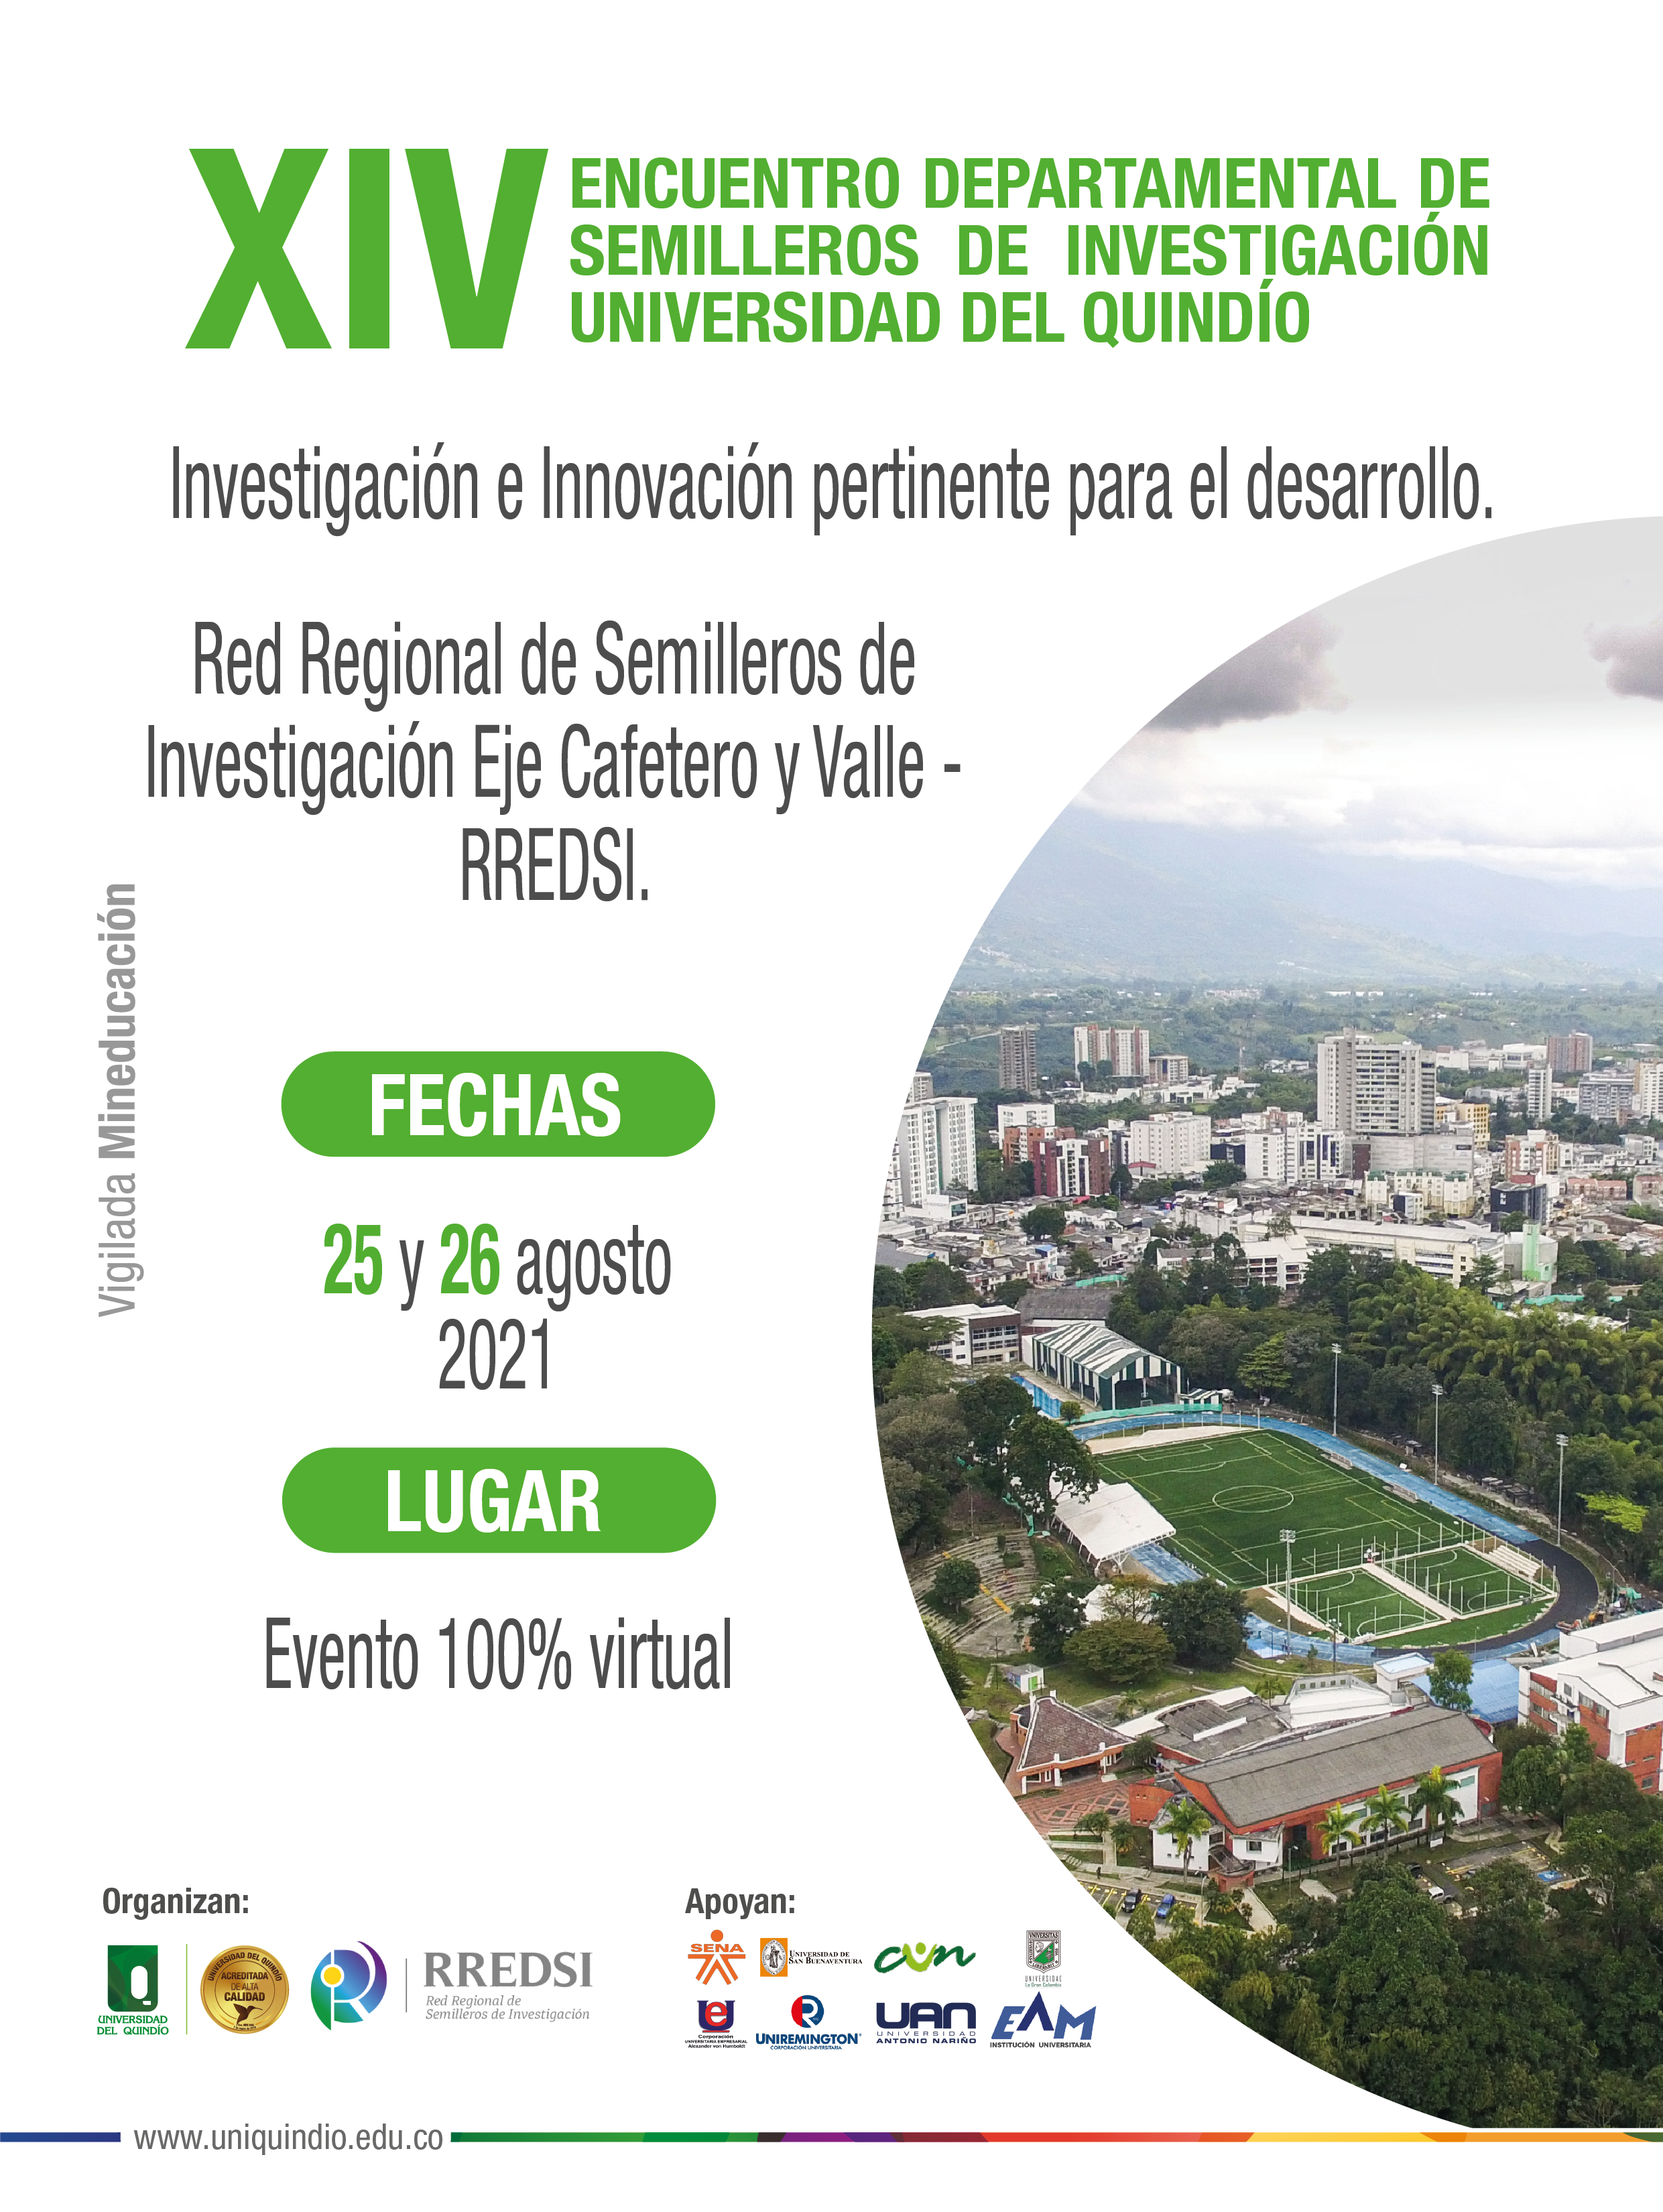 					Ver Vol. 34 Núm. S1 (2022): Encuentro Departamental de Semilleros de Investigación Universidad del Quindío
				